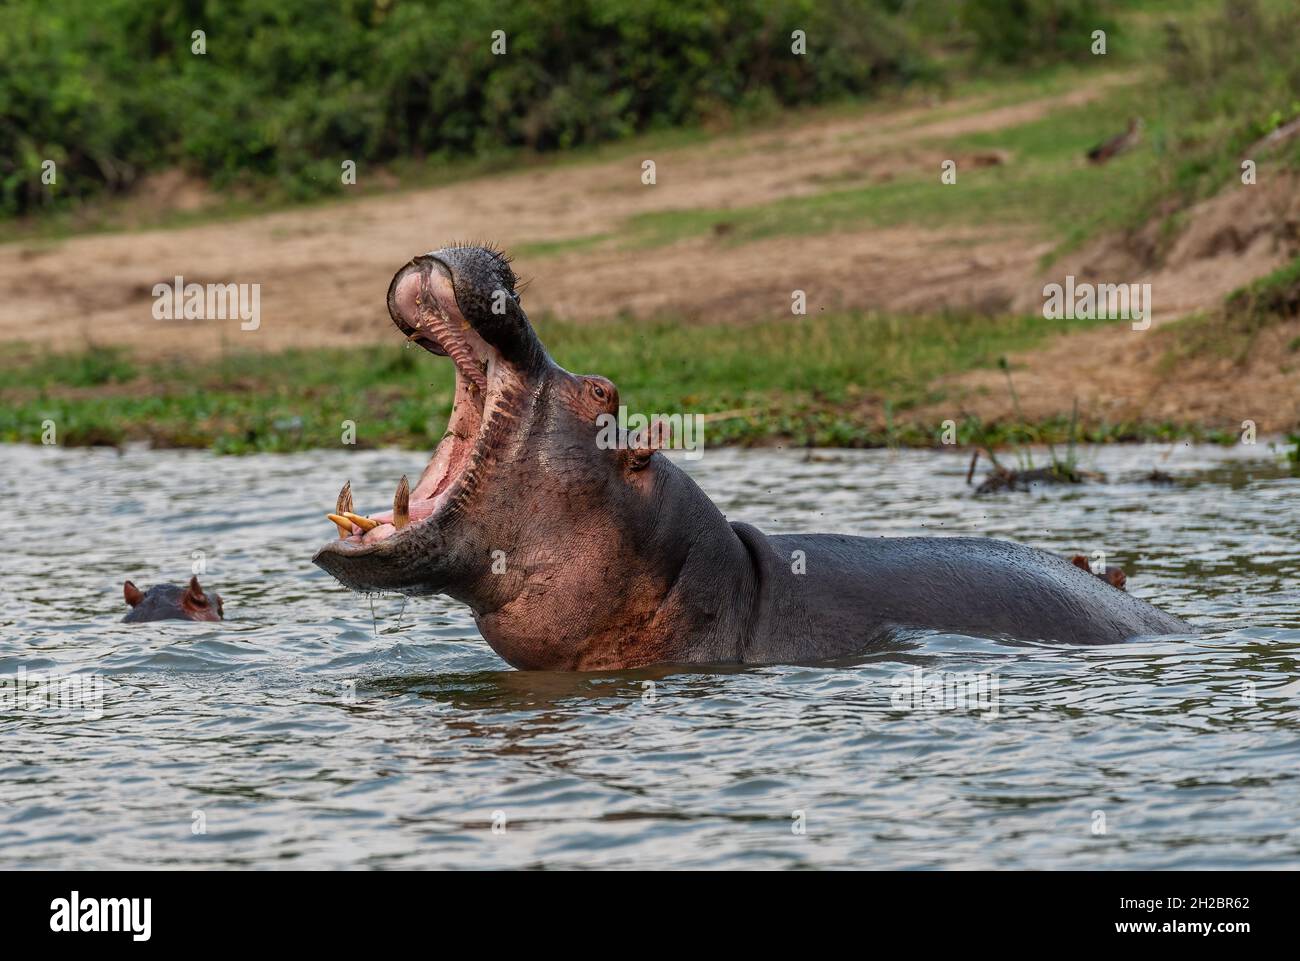 Hippopotamus - Hippopotamus amphibius, beliebtes Großsäugetier aus afrikanischen Flüssen und Seen, Queen Elizabeth National Park, Uganda. Stockfoto